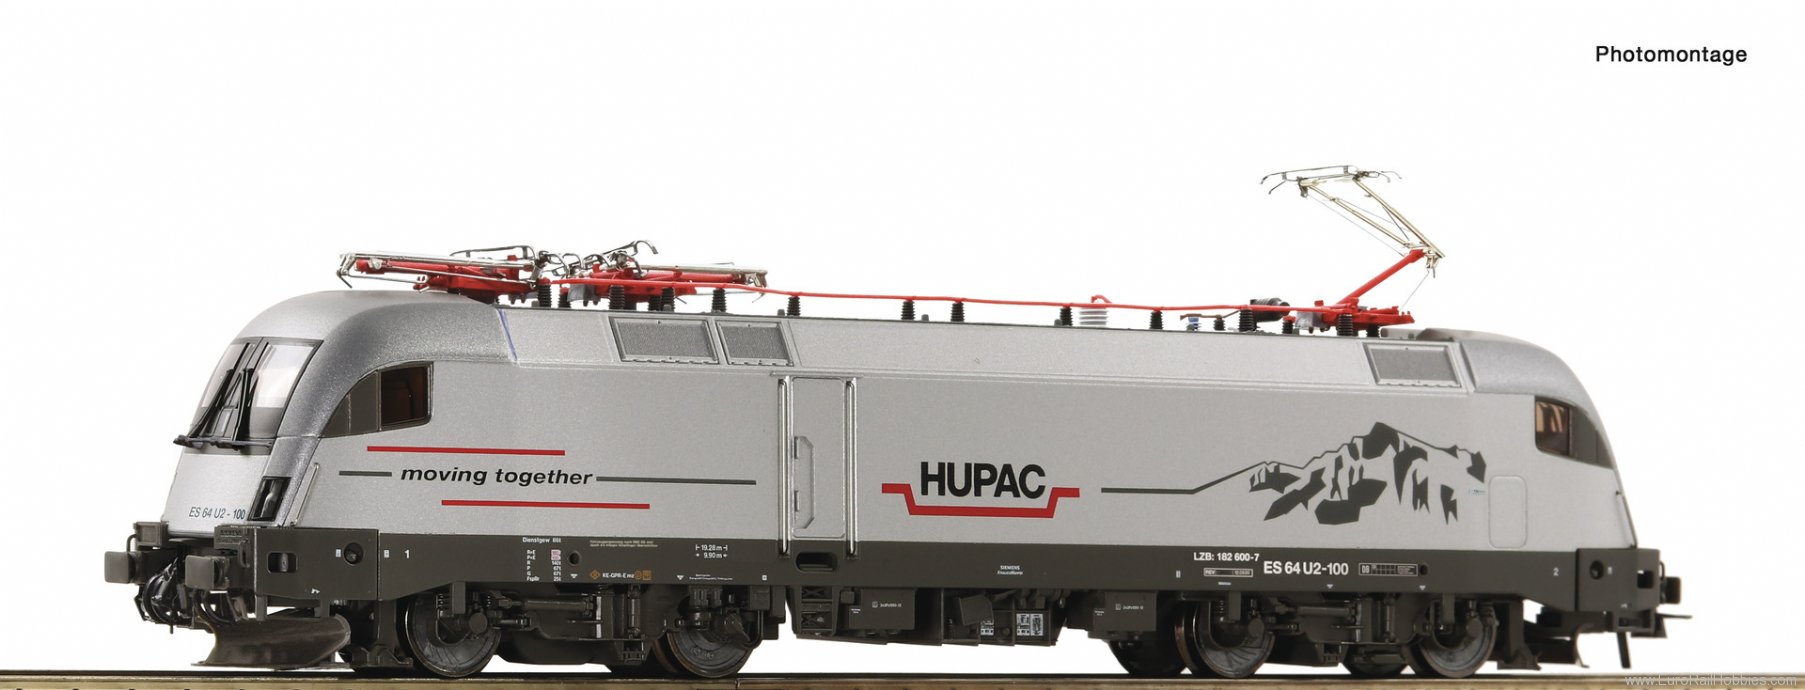 Roco 7520070 Electric locomotive ES 64 U2-100, HUPAC (Mark